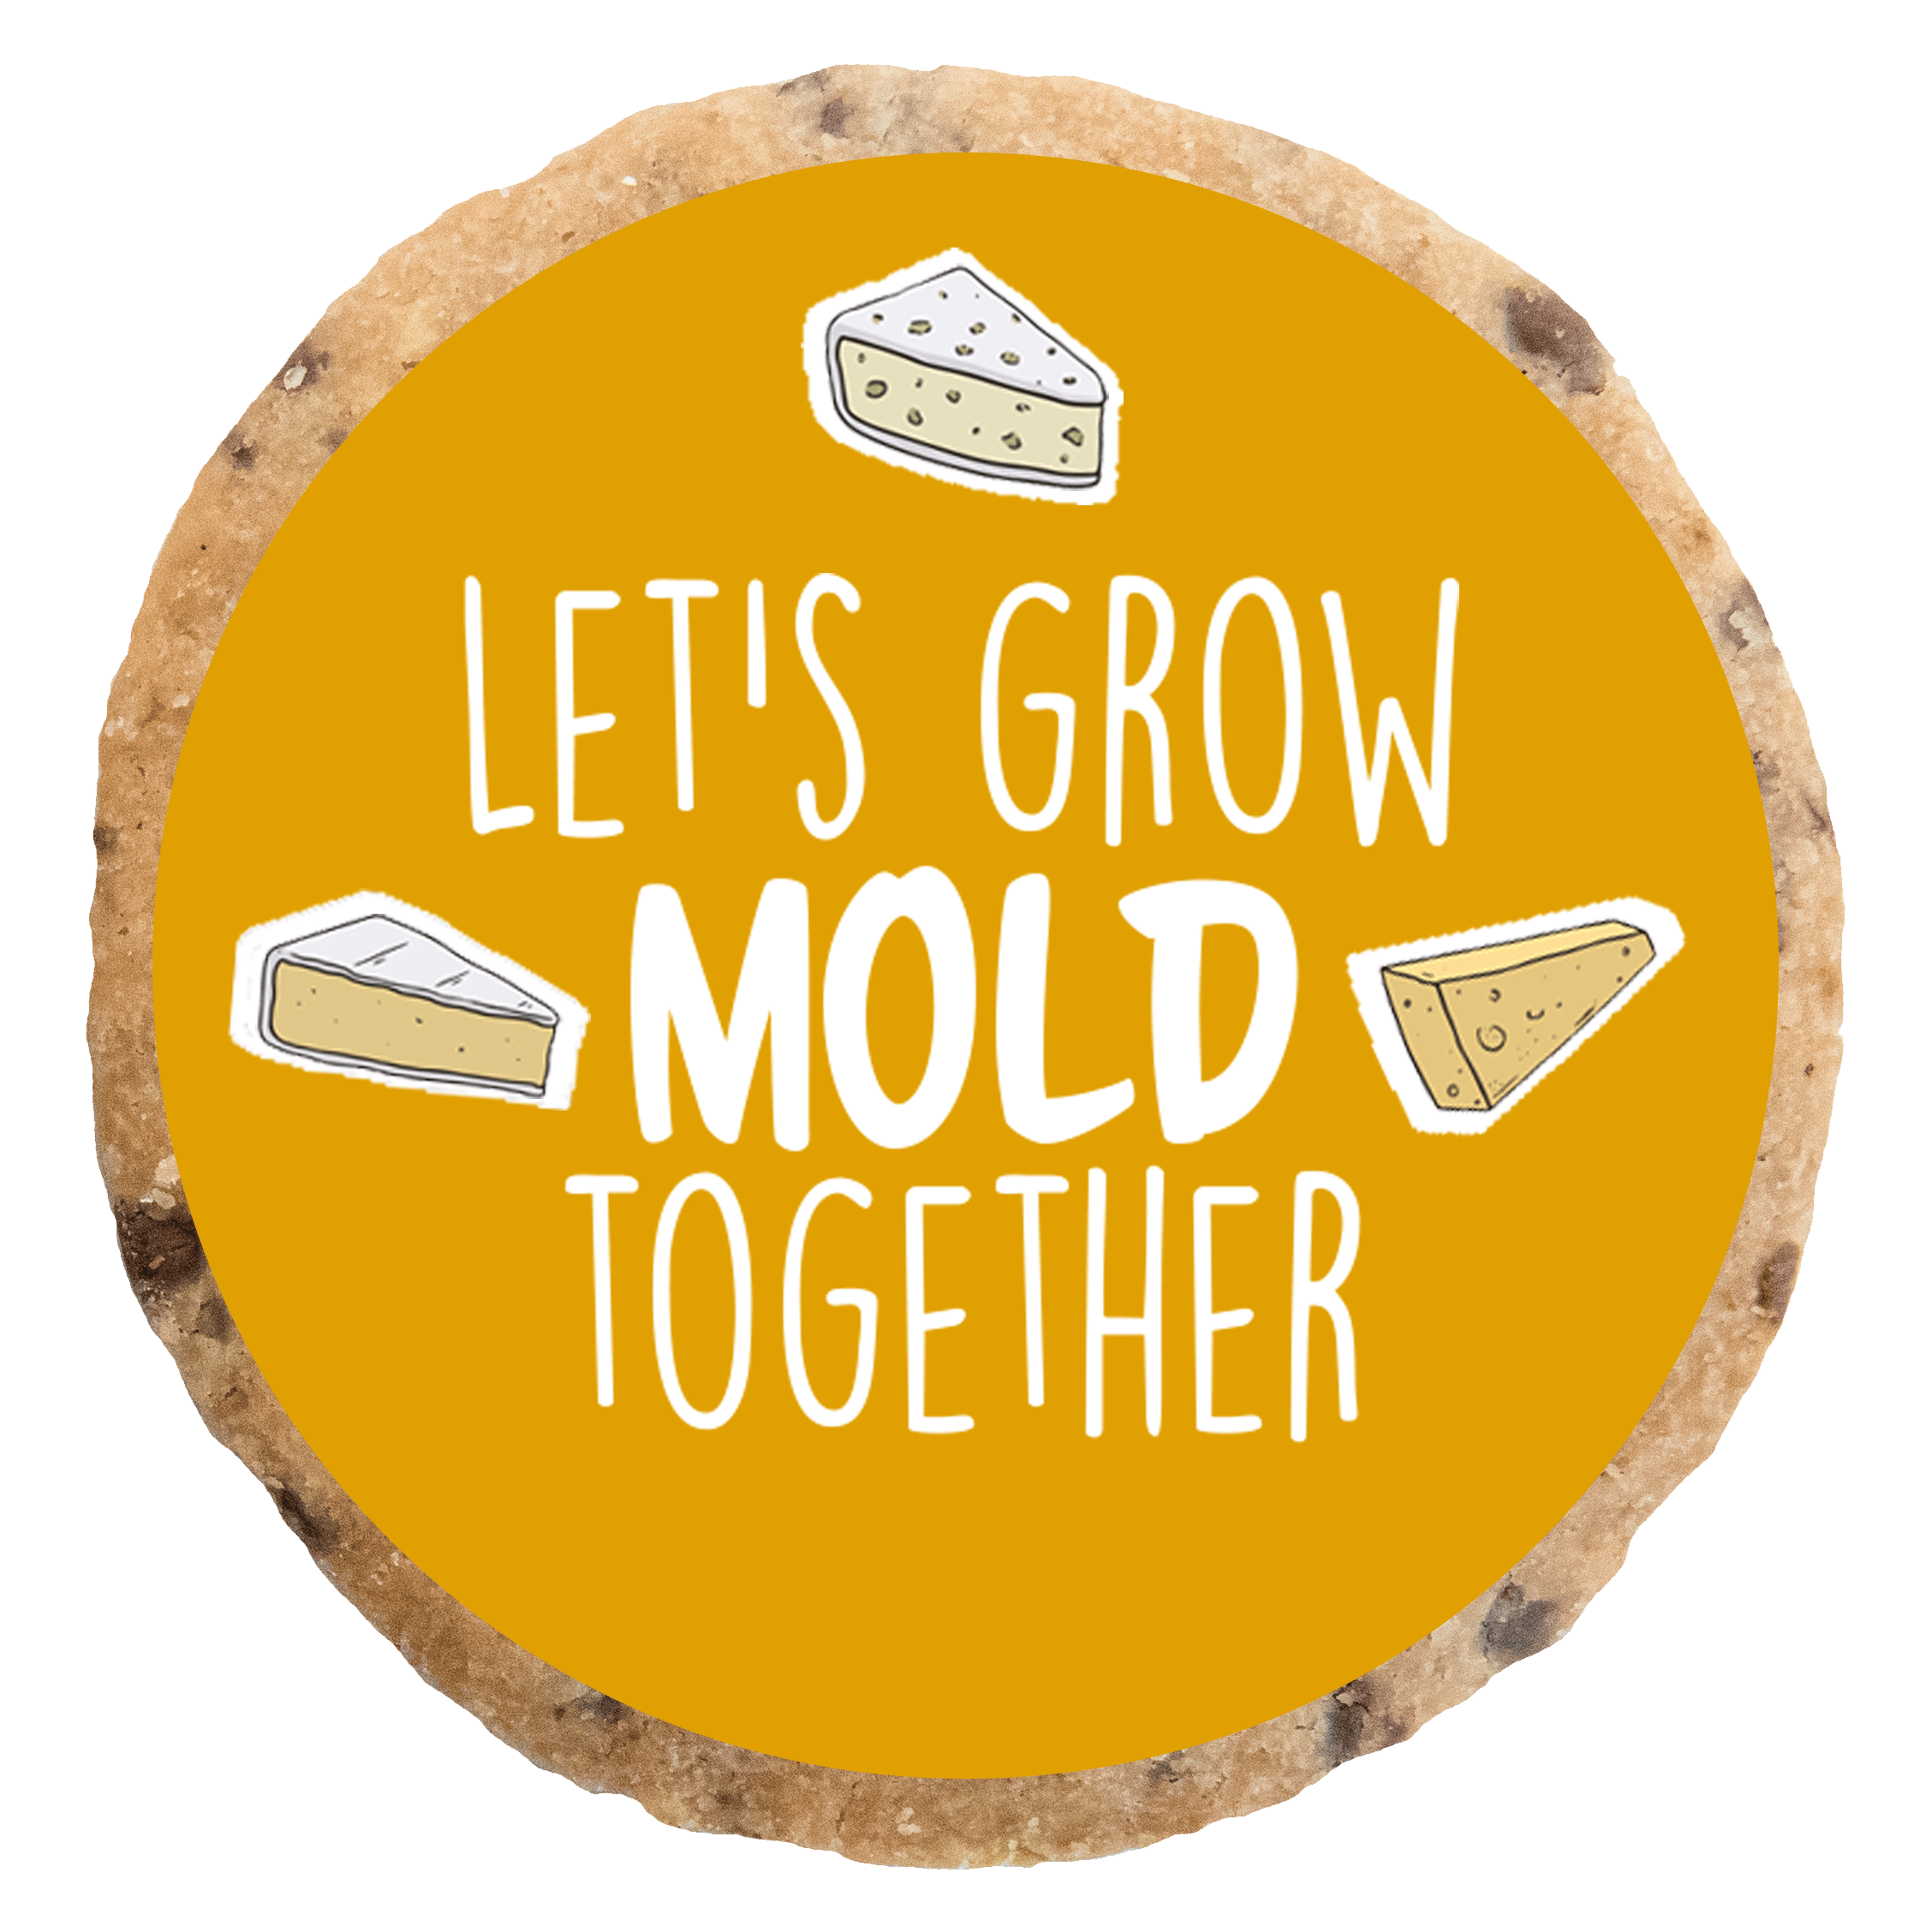 "Let's grow mold together" MotivKEKS